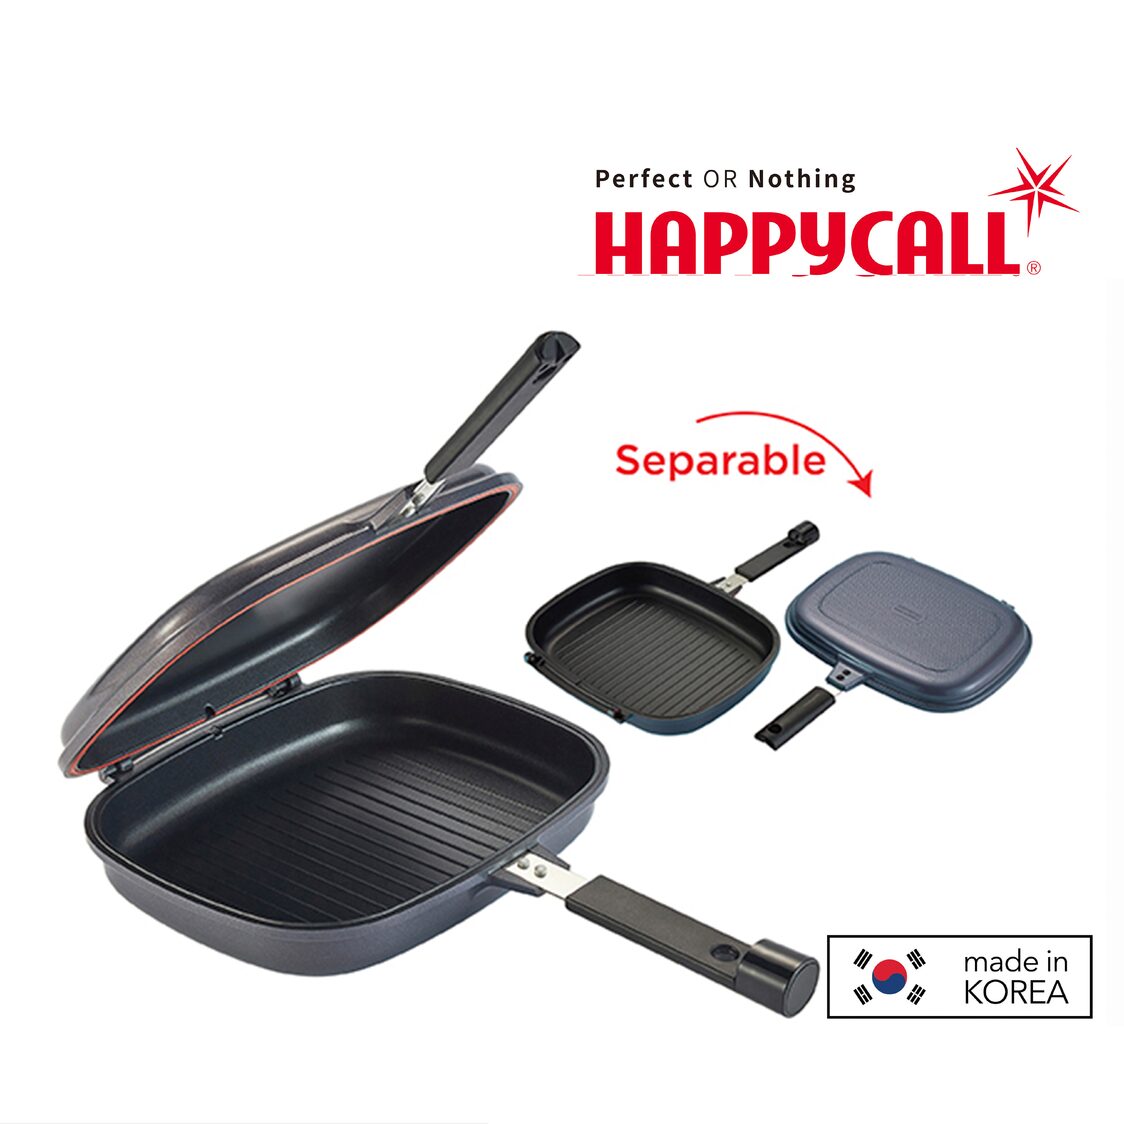 Happycall Double Pan Jumbo Grill